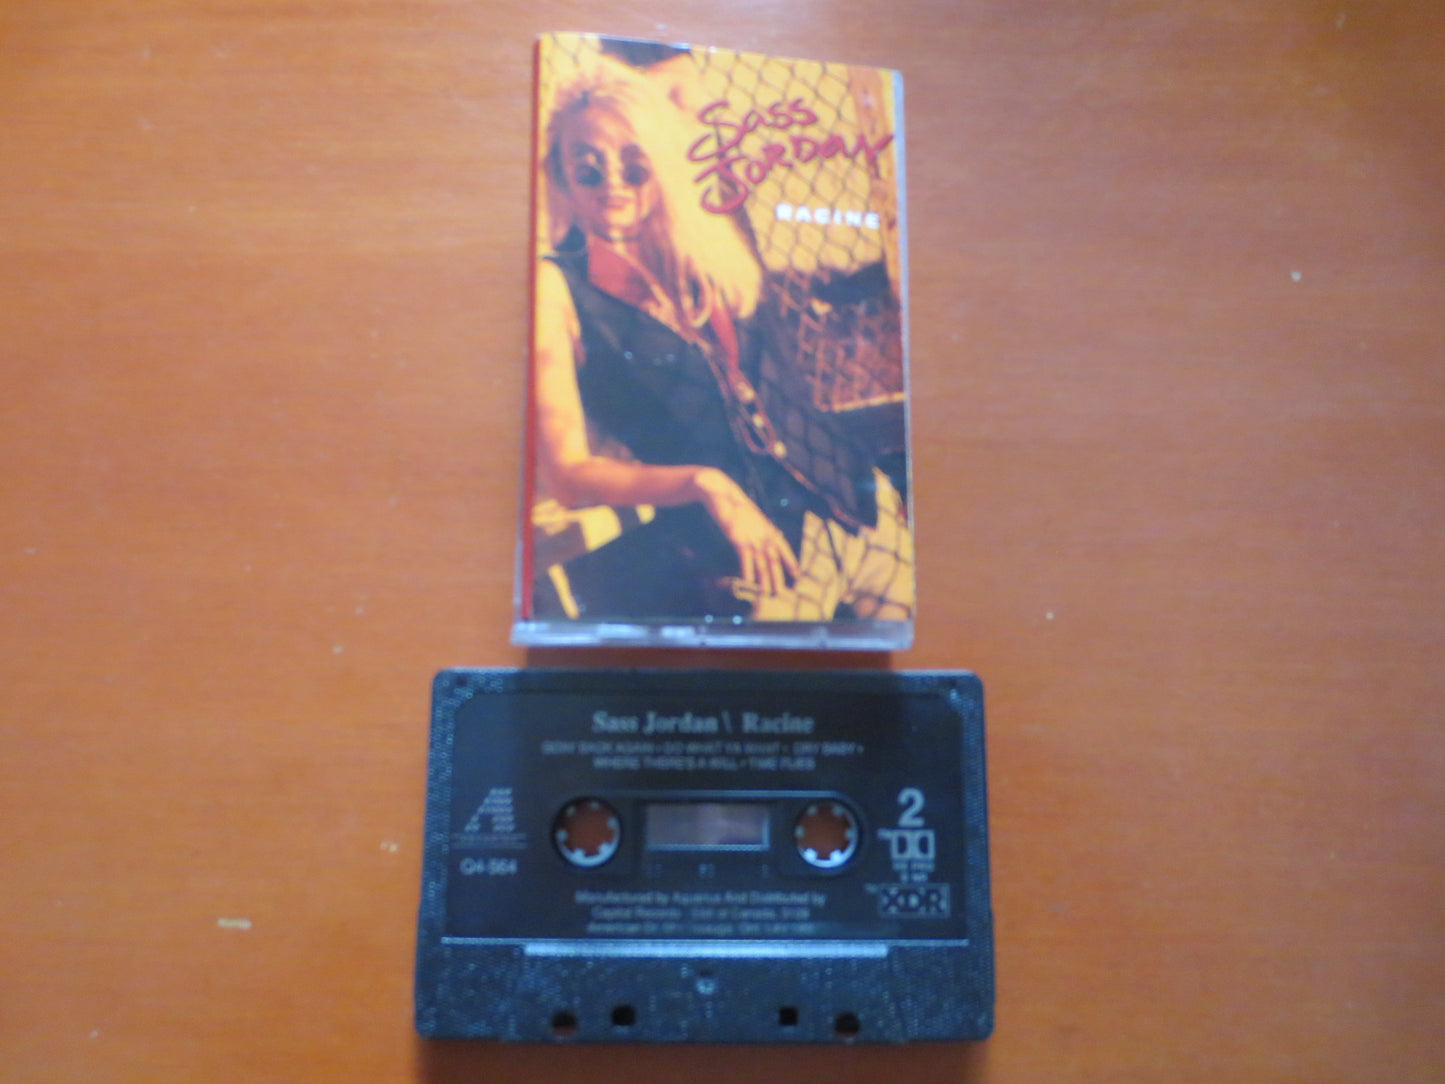 SASS JORDAN Tape, RACINE Tape, Sass Jordan Album, Sass Jordan Music, Sass Jordan Lp, Tape Cassette, Cassette, 1992 Cassette